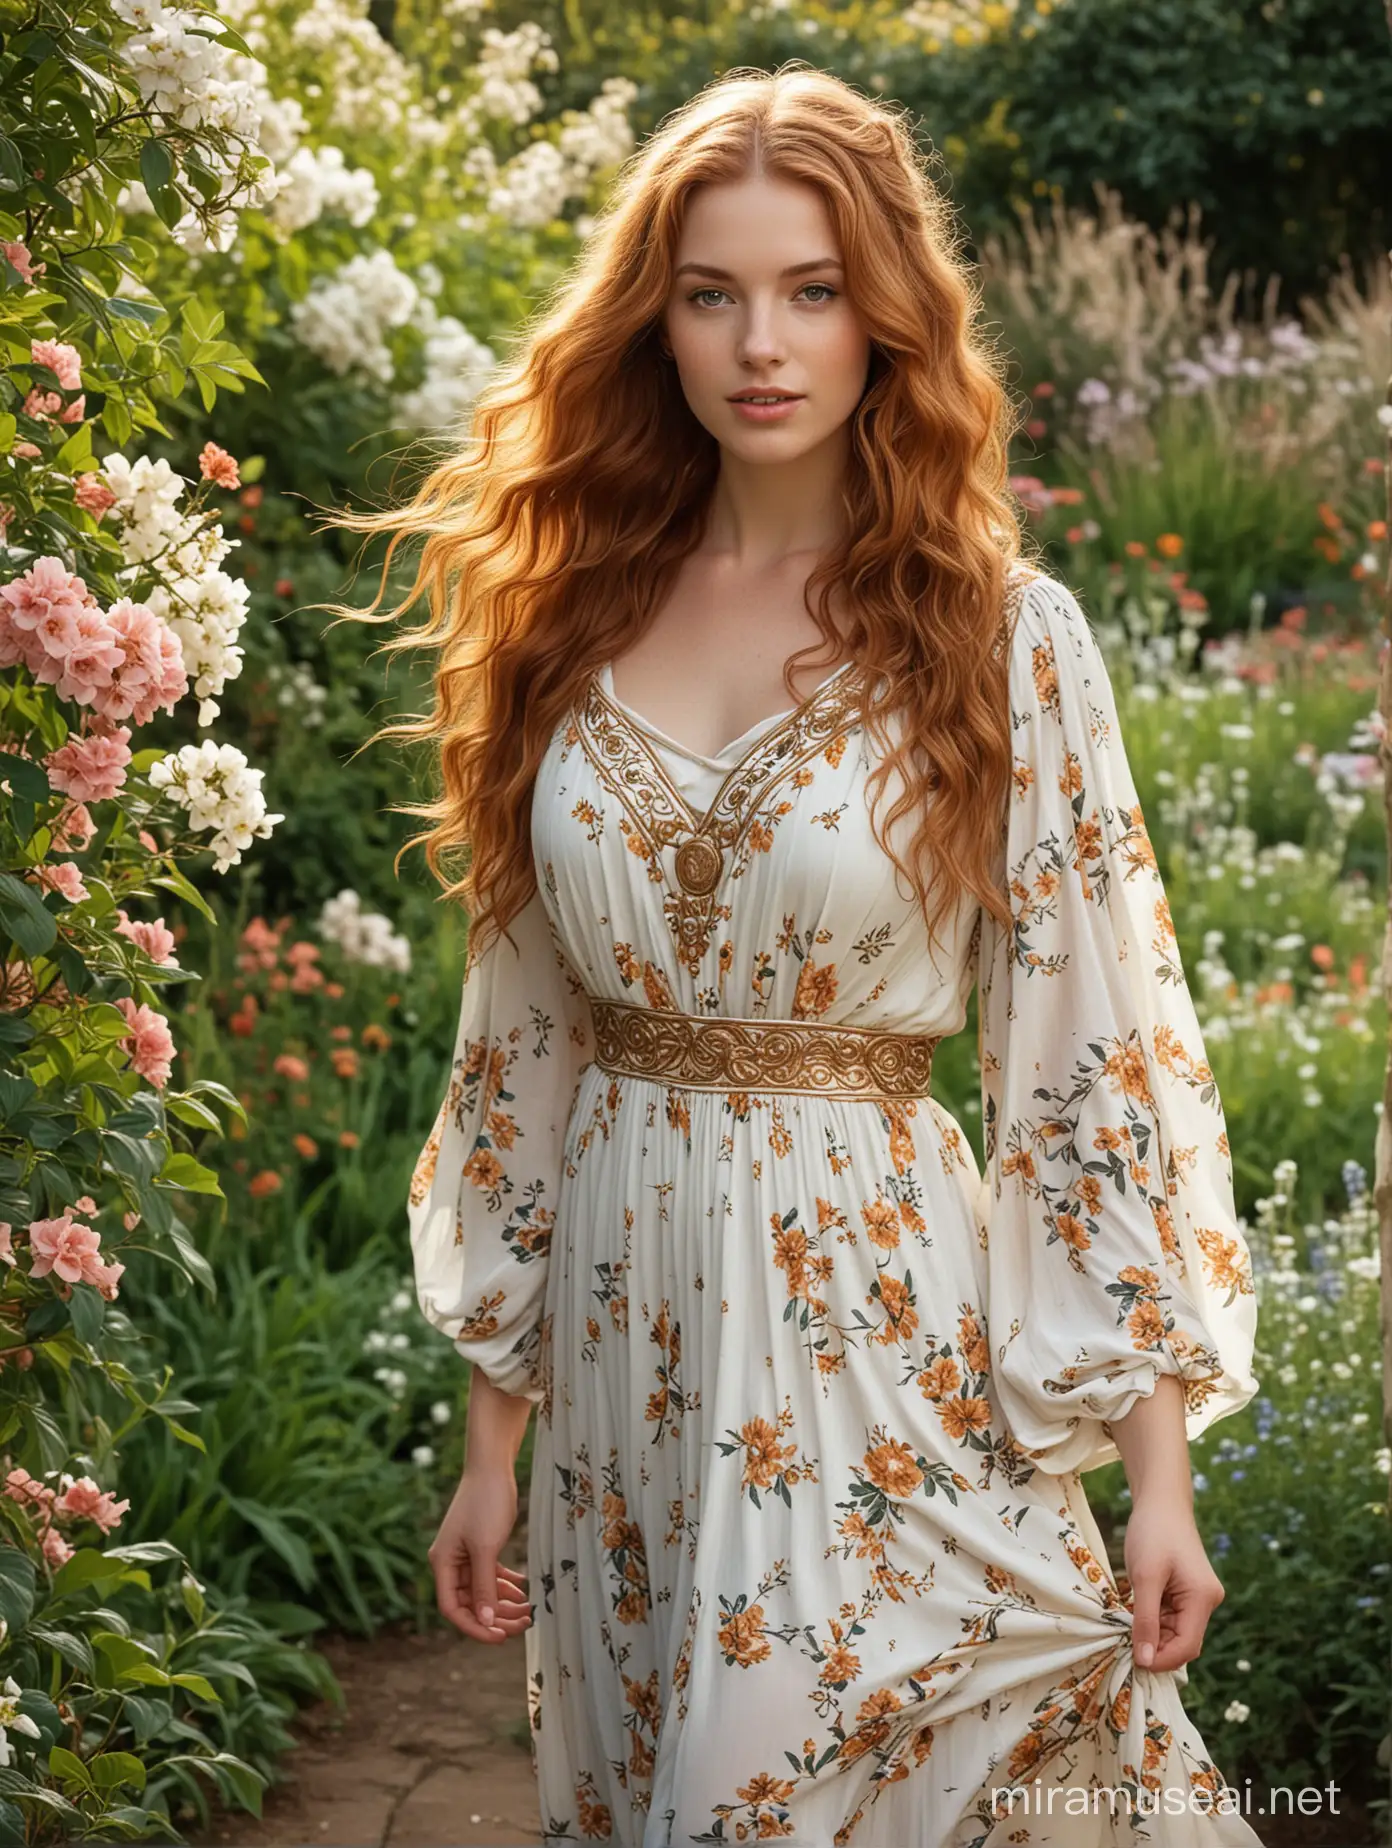 Julie Roberts Radiant in Ancient Greek Dress Amidst Flower Garden